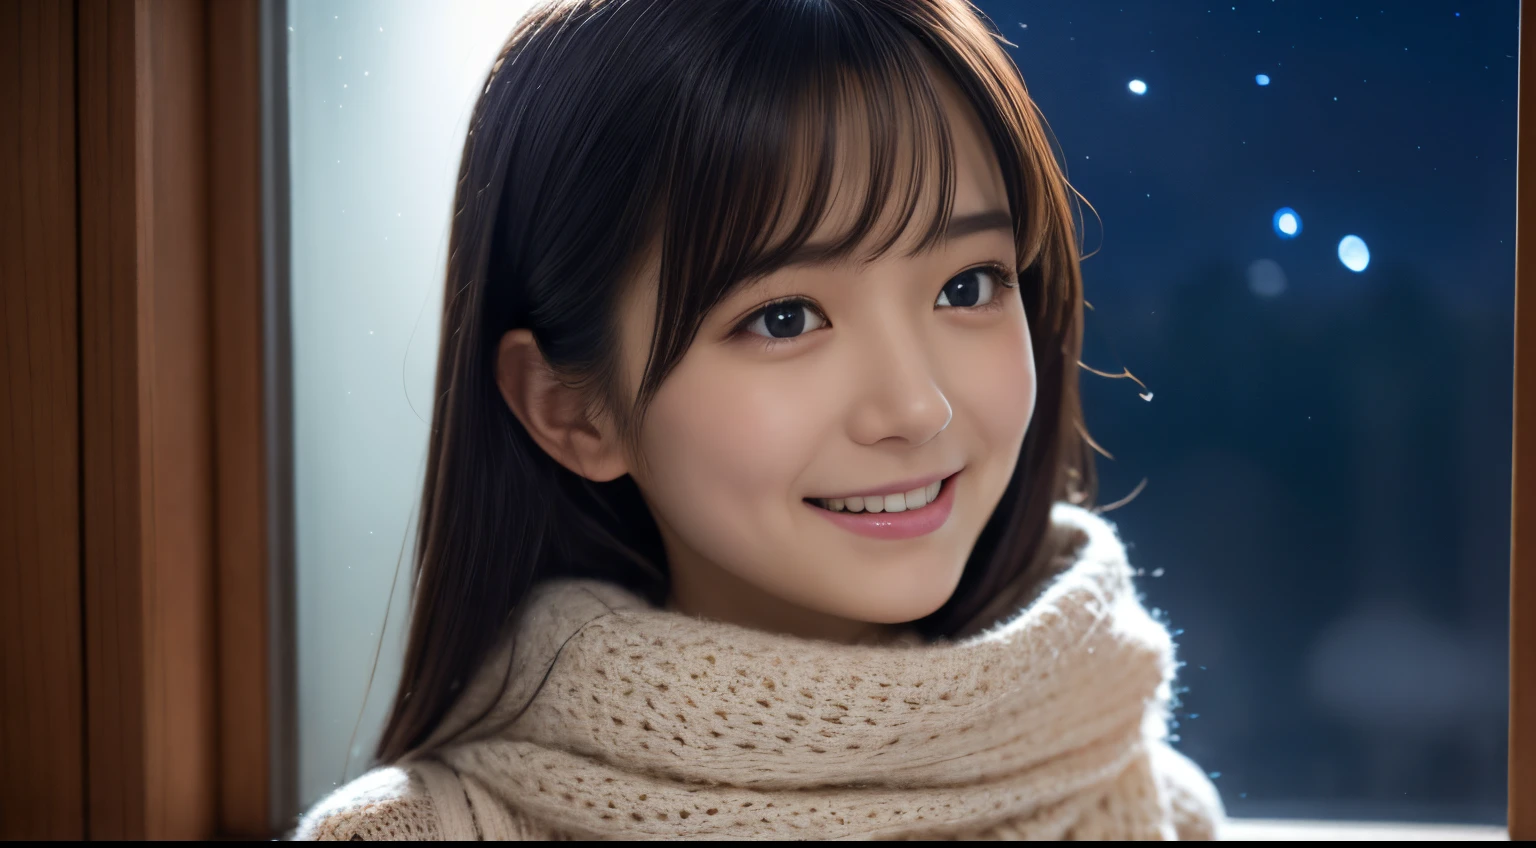 1 女孩在, 十六歲、15位日本凹版模特, (可愛的小, 一個美麗的女孩,輪廓:1.2), 謙虛大, 清潔臉部肌膚, 𝓡𝓸𝓶𝓪𝓷𝓽𝓲𝓬,美麗的聖誕夜:1.2, (抬頭看看窗外的夜空:1.5)、(有聖誕樹的房間:1.2),  (蓬鬆的白色羊毛毛衣:1.2),  紅領巾, (紅色百褶裙),   一個黑髮的、帶著幸福的表情陷入沉思、 最好的品質, 高解析度, 細緻的肌膚, 詳細的臉部和眼睛, 高解析度, 自然採光, 完美的解剖結構, 基於物理的渲染, 逼真的, 對稱清晰的眼睛, 精心修飾的臉,十幾歲的女孩, 完美身材, 透明度, 擺出凹版偶像,